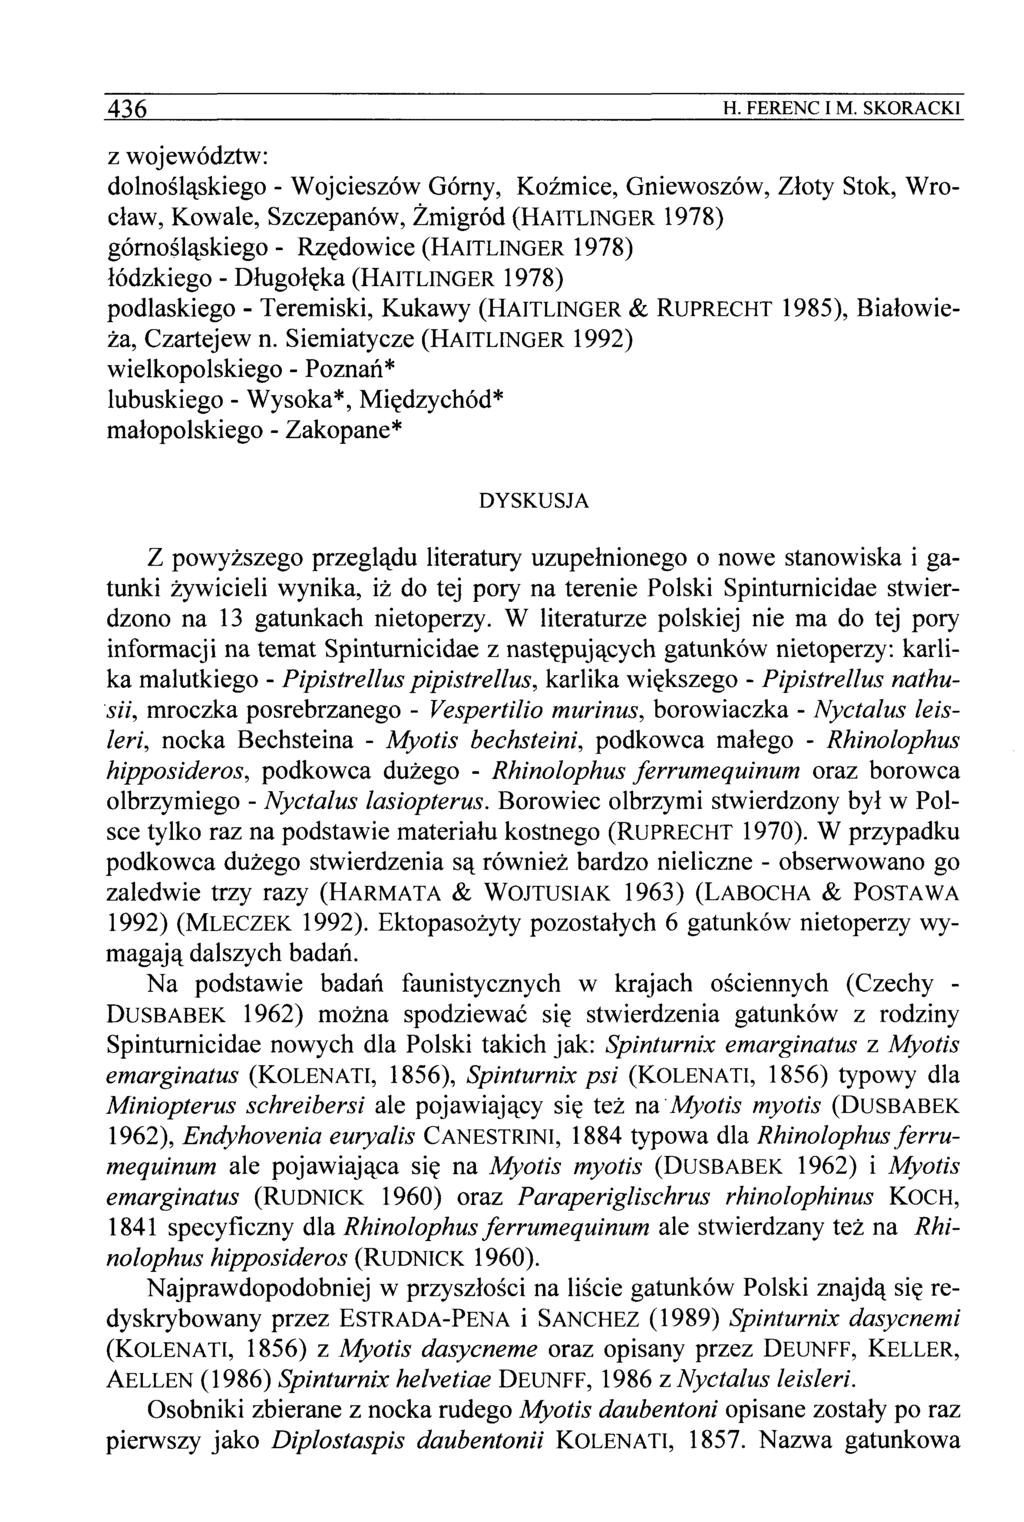 436 H. FERENC I M. SKORACK1 dolnosla^skiego - Wojcieszow Gorny, Kozmice, Gniewoszow, Zloty Stok, Wroclaw, Kowale, Szczepanow, Zmigrod (HAITLINGER 1978) gornosla^skiego - Rz?